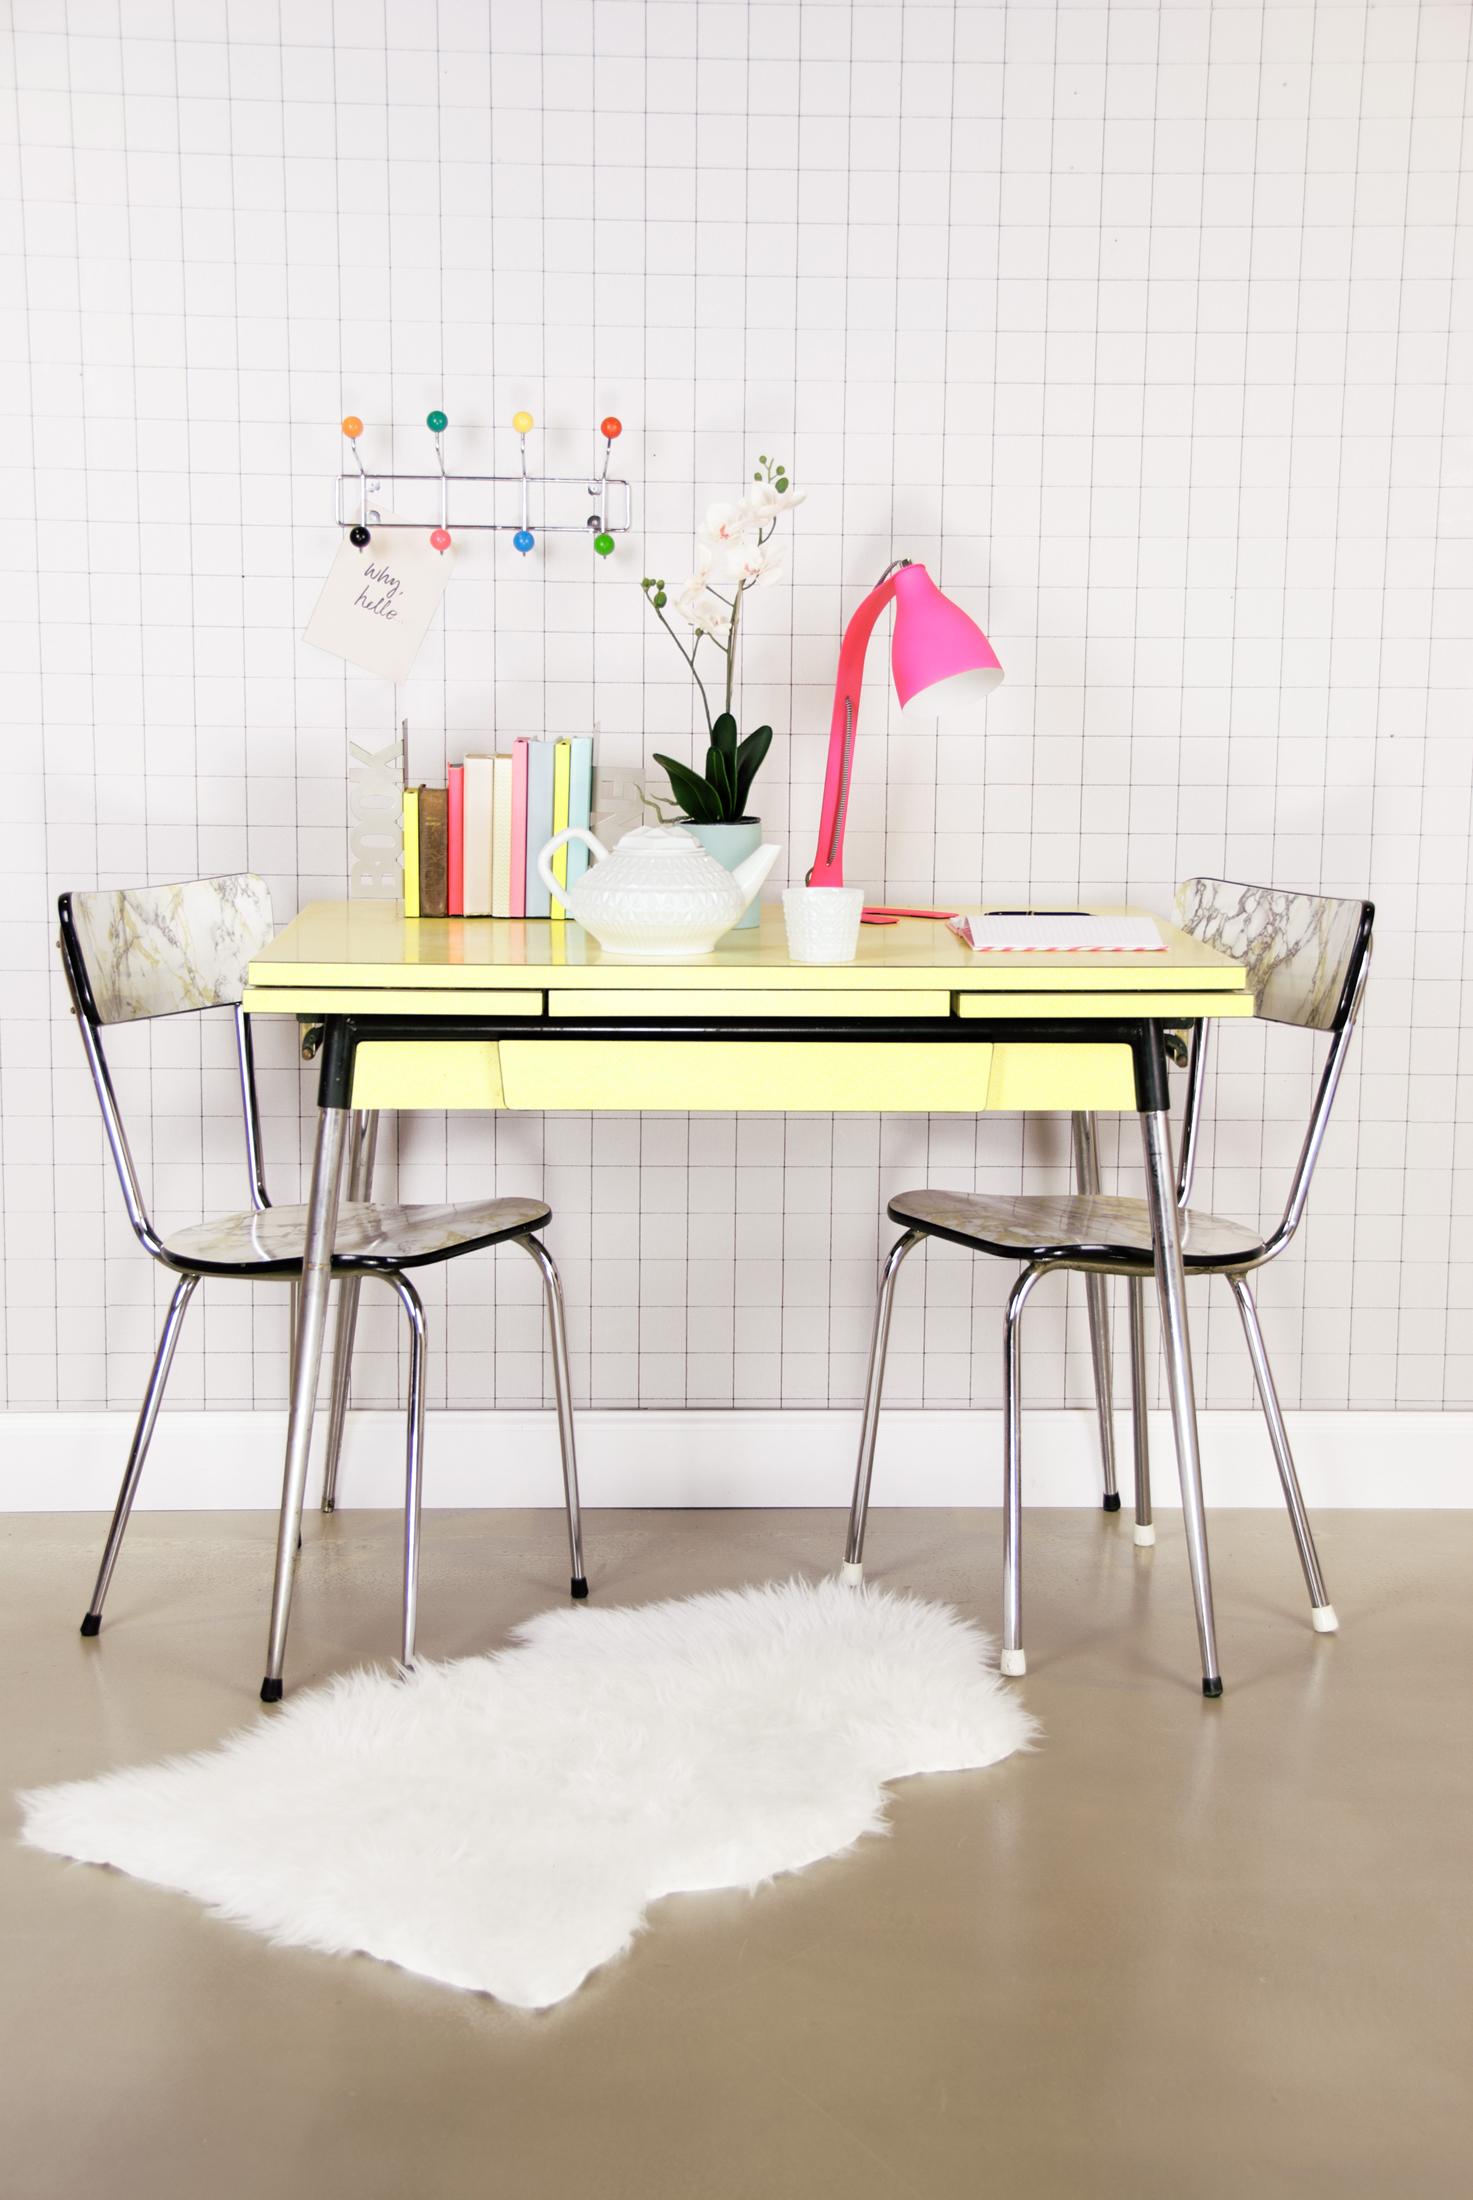 Farbliche Akzente durch Retro-Einrichtung setzen #stuhl #teppich #tisch #teekanne ©Present Time